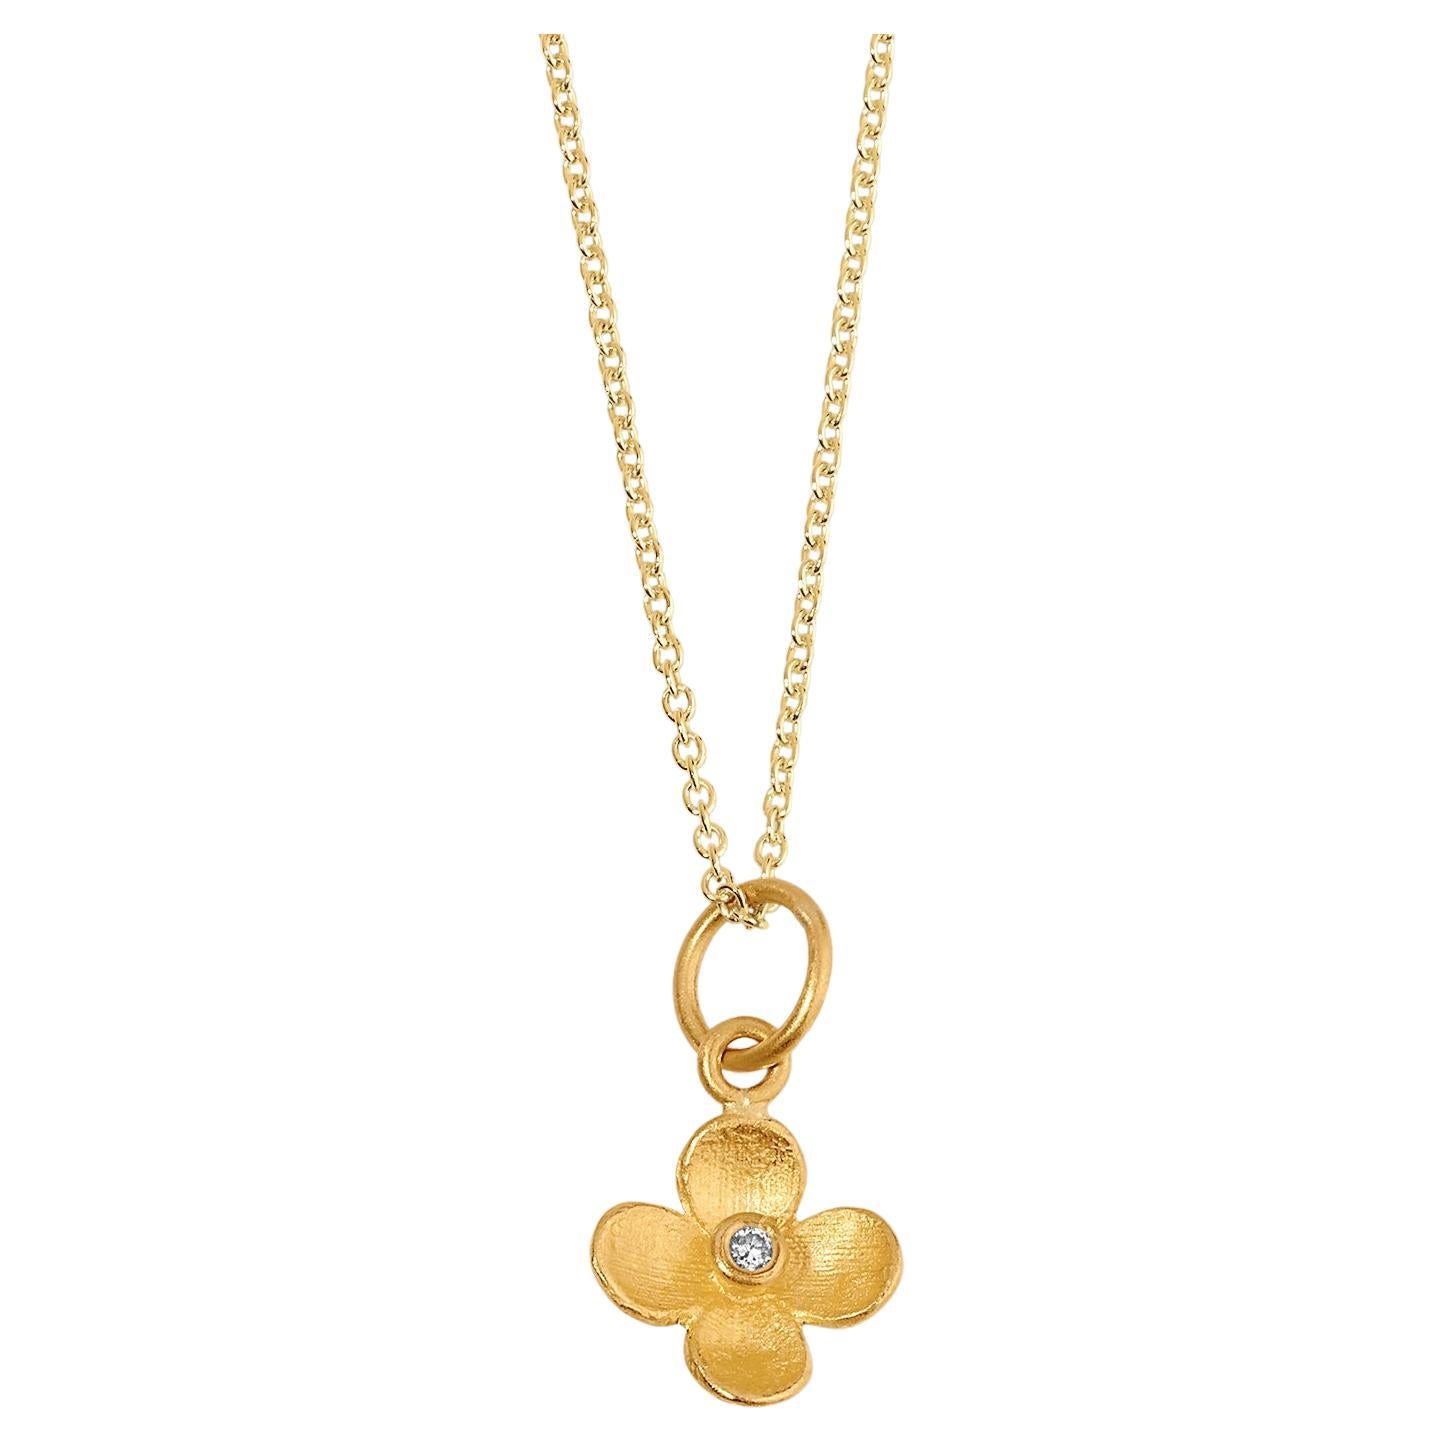 Miniature Four-Petal Flower Charm Pendant Necklace with Center Diamond 24kt Gold